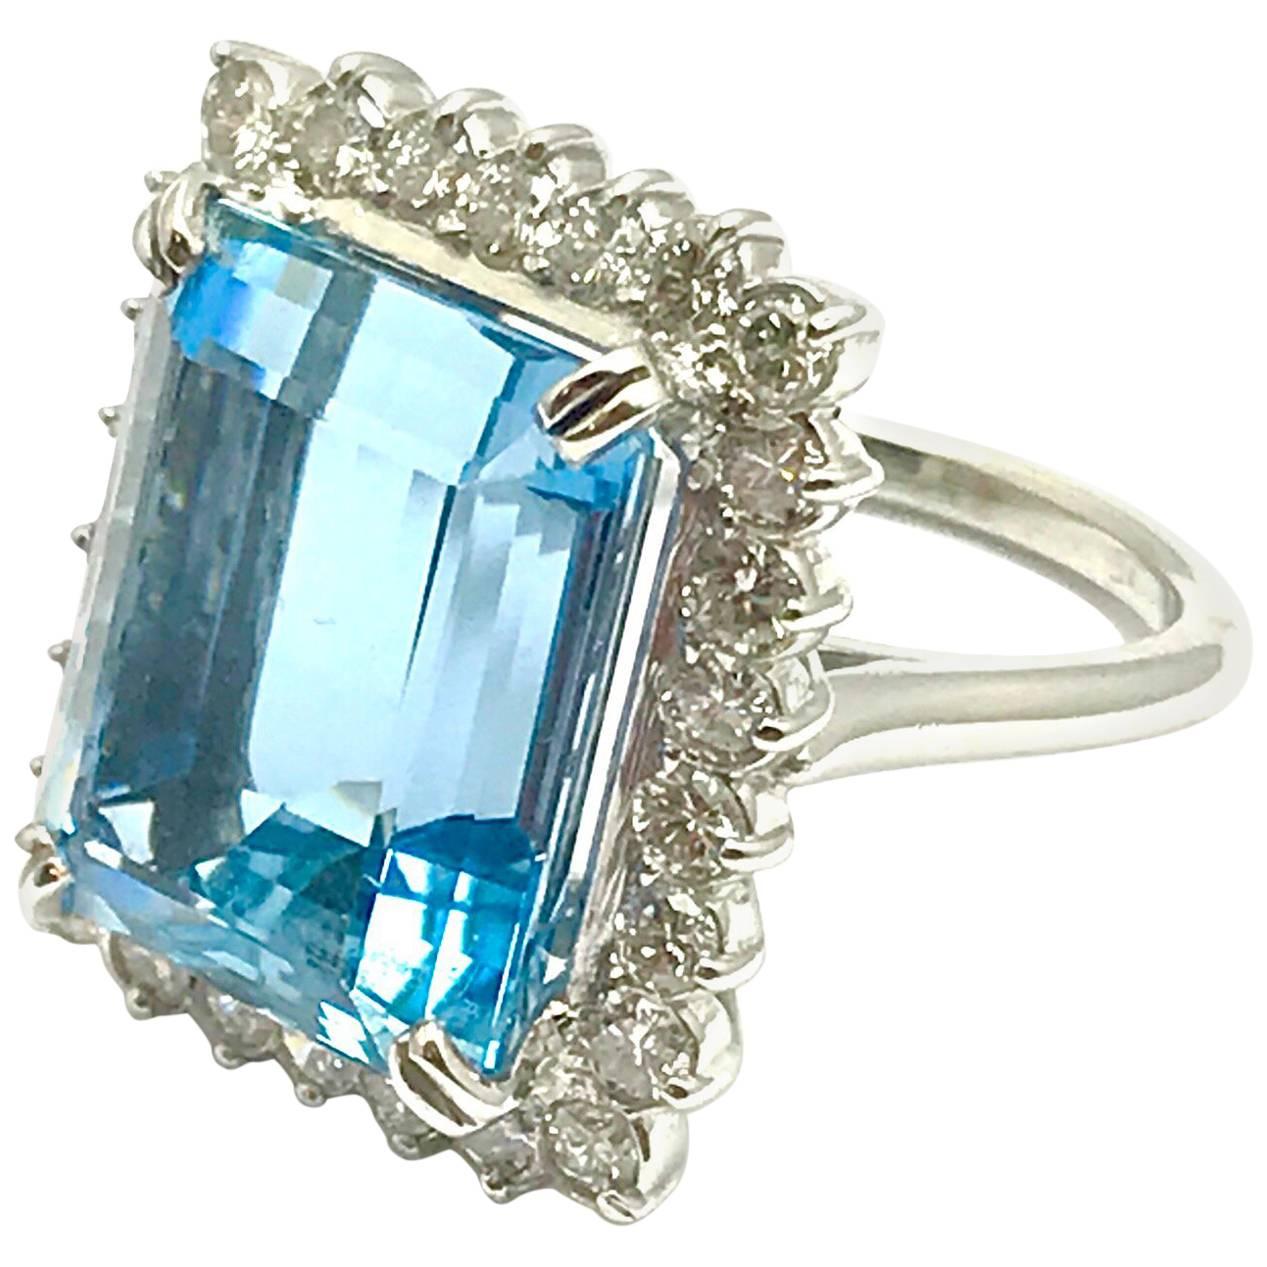 12.16 Carat Emerald Cut Aquamarine and Diamond Platinum Ring